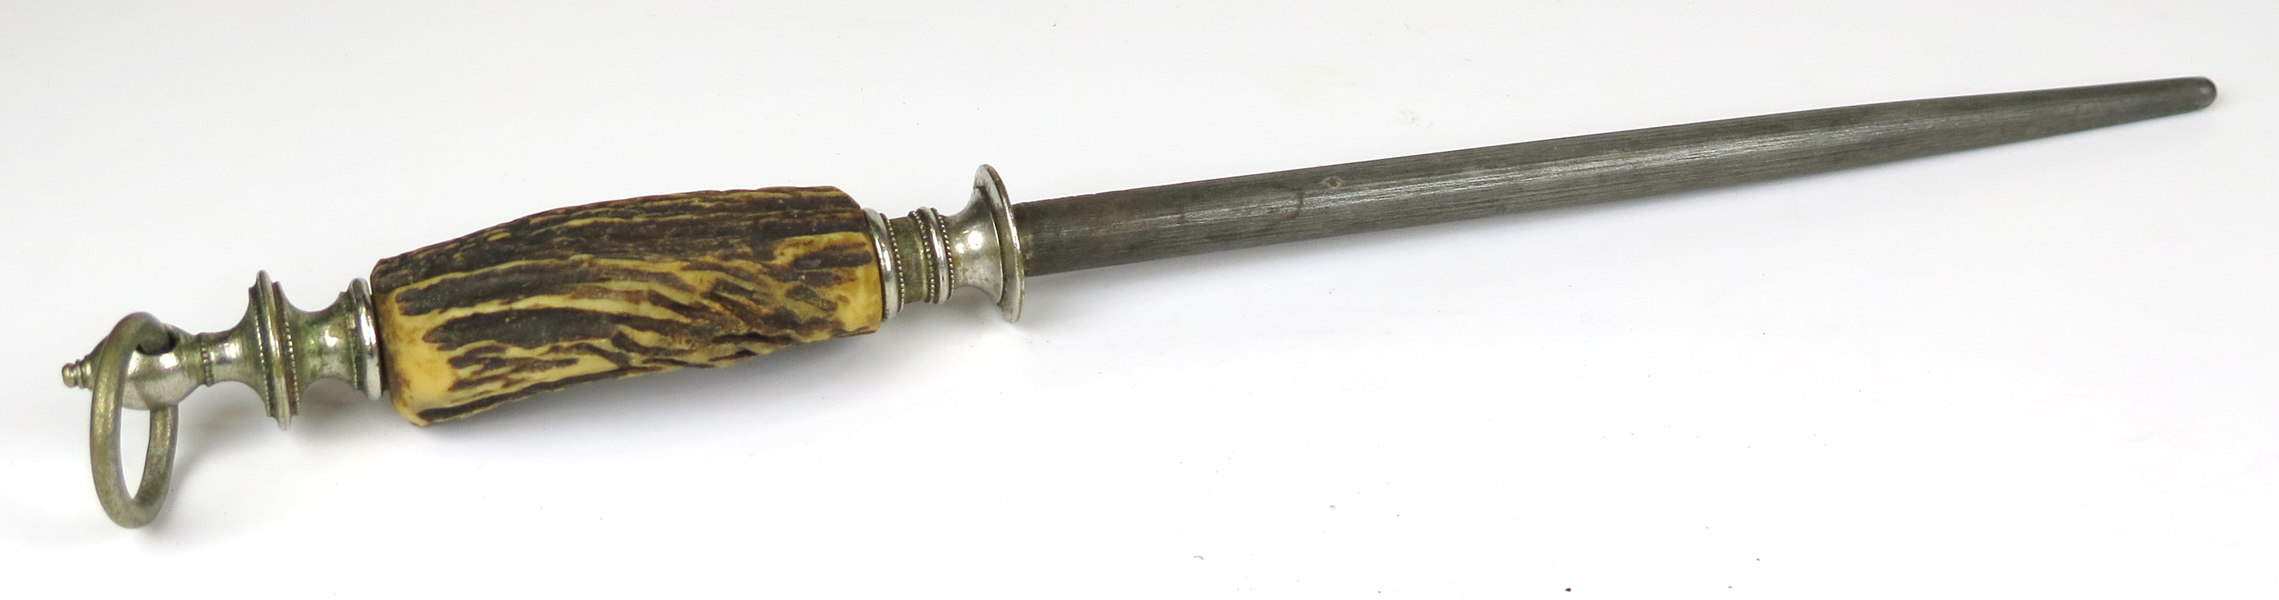 Brynstål, stål med handtag i horn, F Dick, 1900-talets början, längd 47 cm_35613a_8dc12bca10a43ac_lg.jpeg